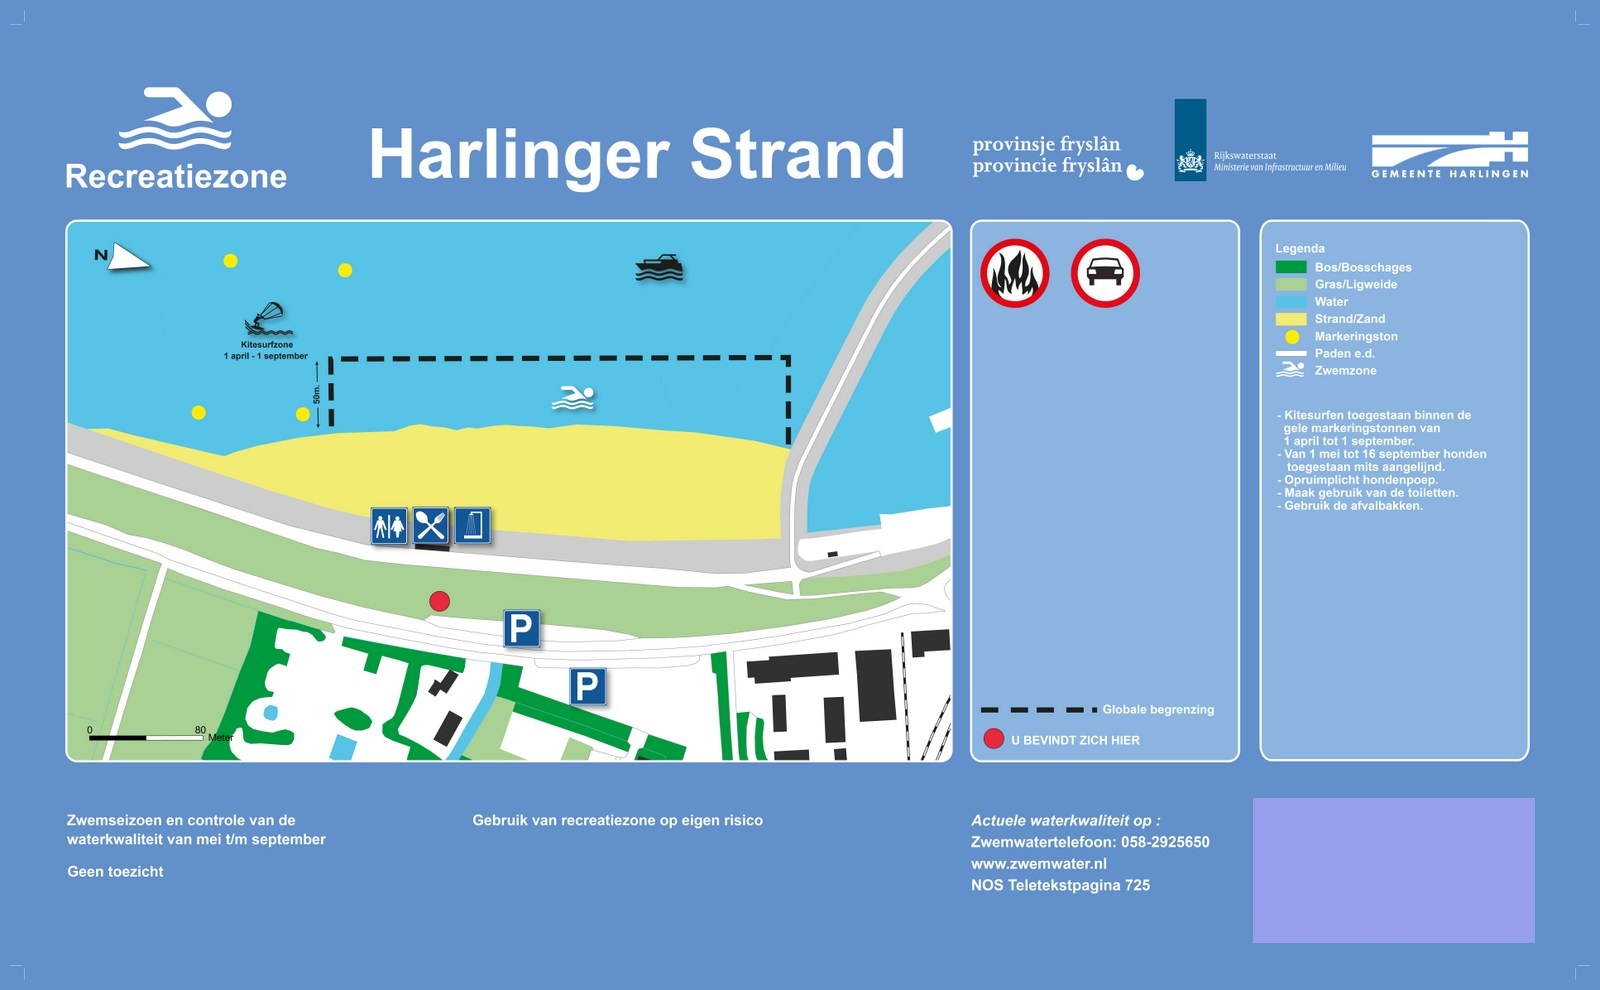 Het informatiebord bij zwemlocatie Harlingerstrand